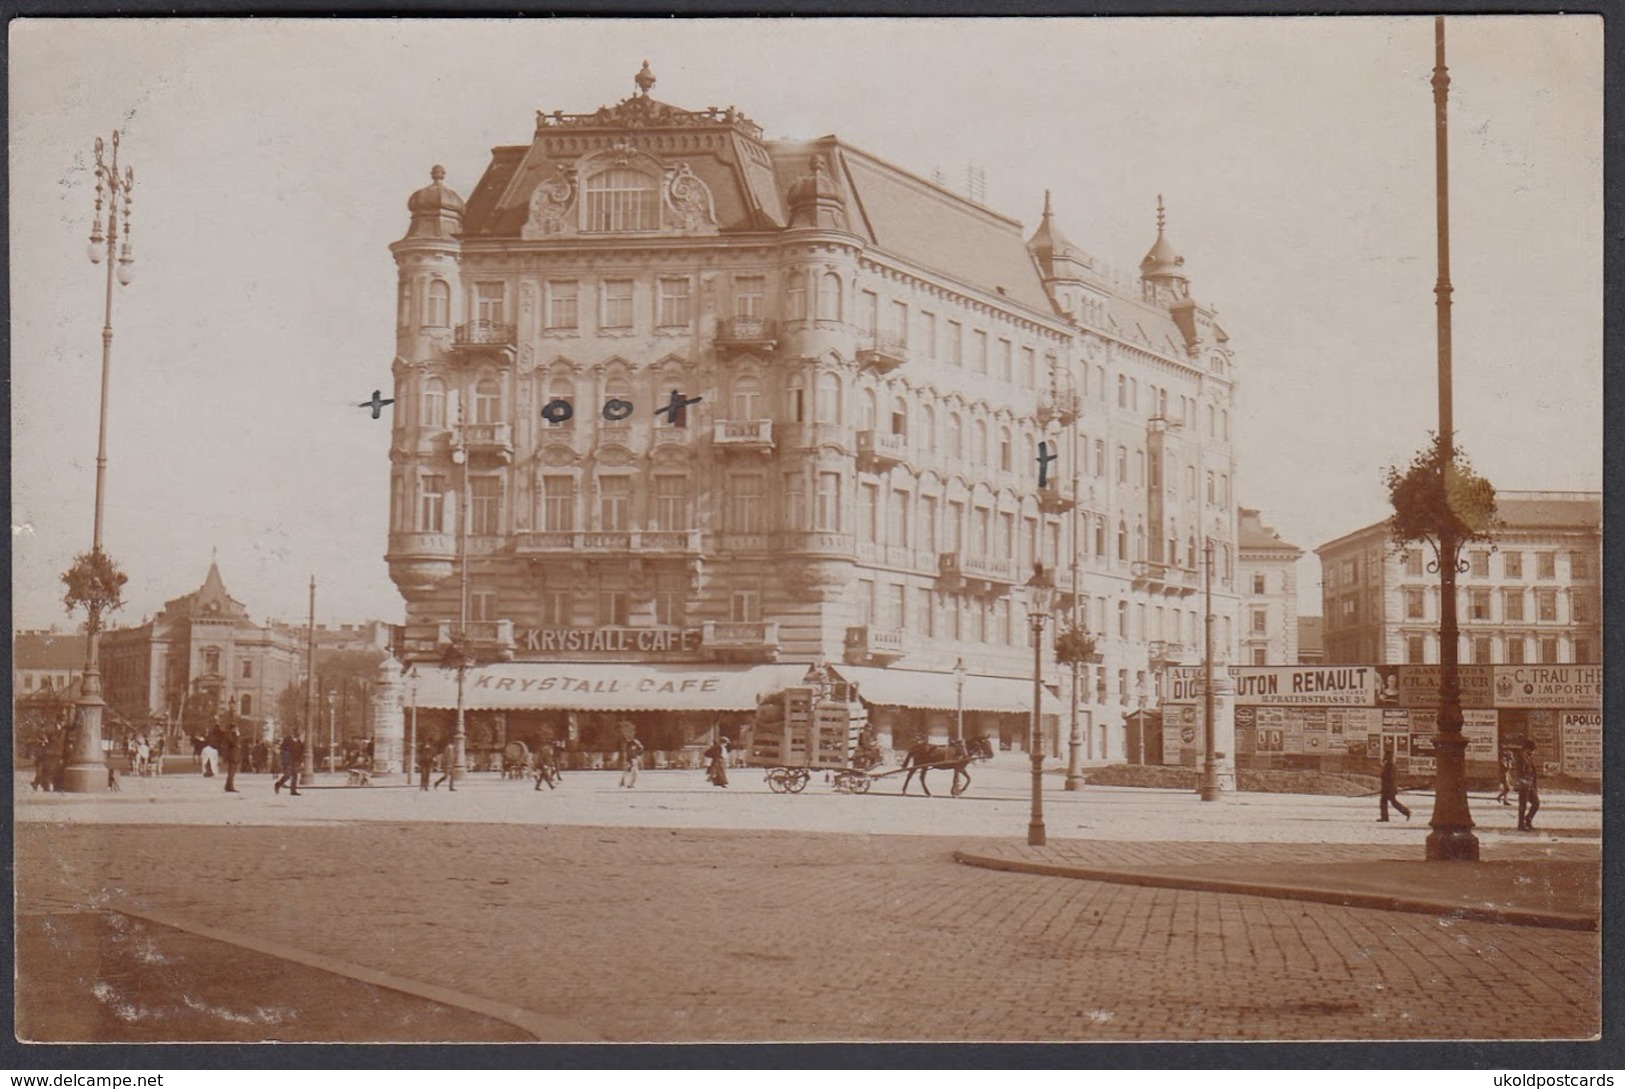 AK - Austria, WIEN / VIENNA, Krystall Cafe, Fotografische Postkarte 1907 - Wien Mitte